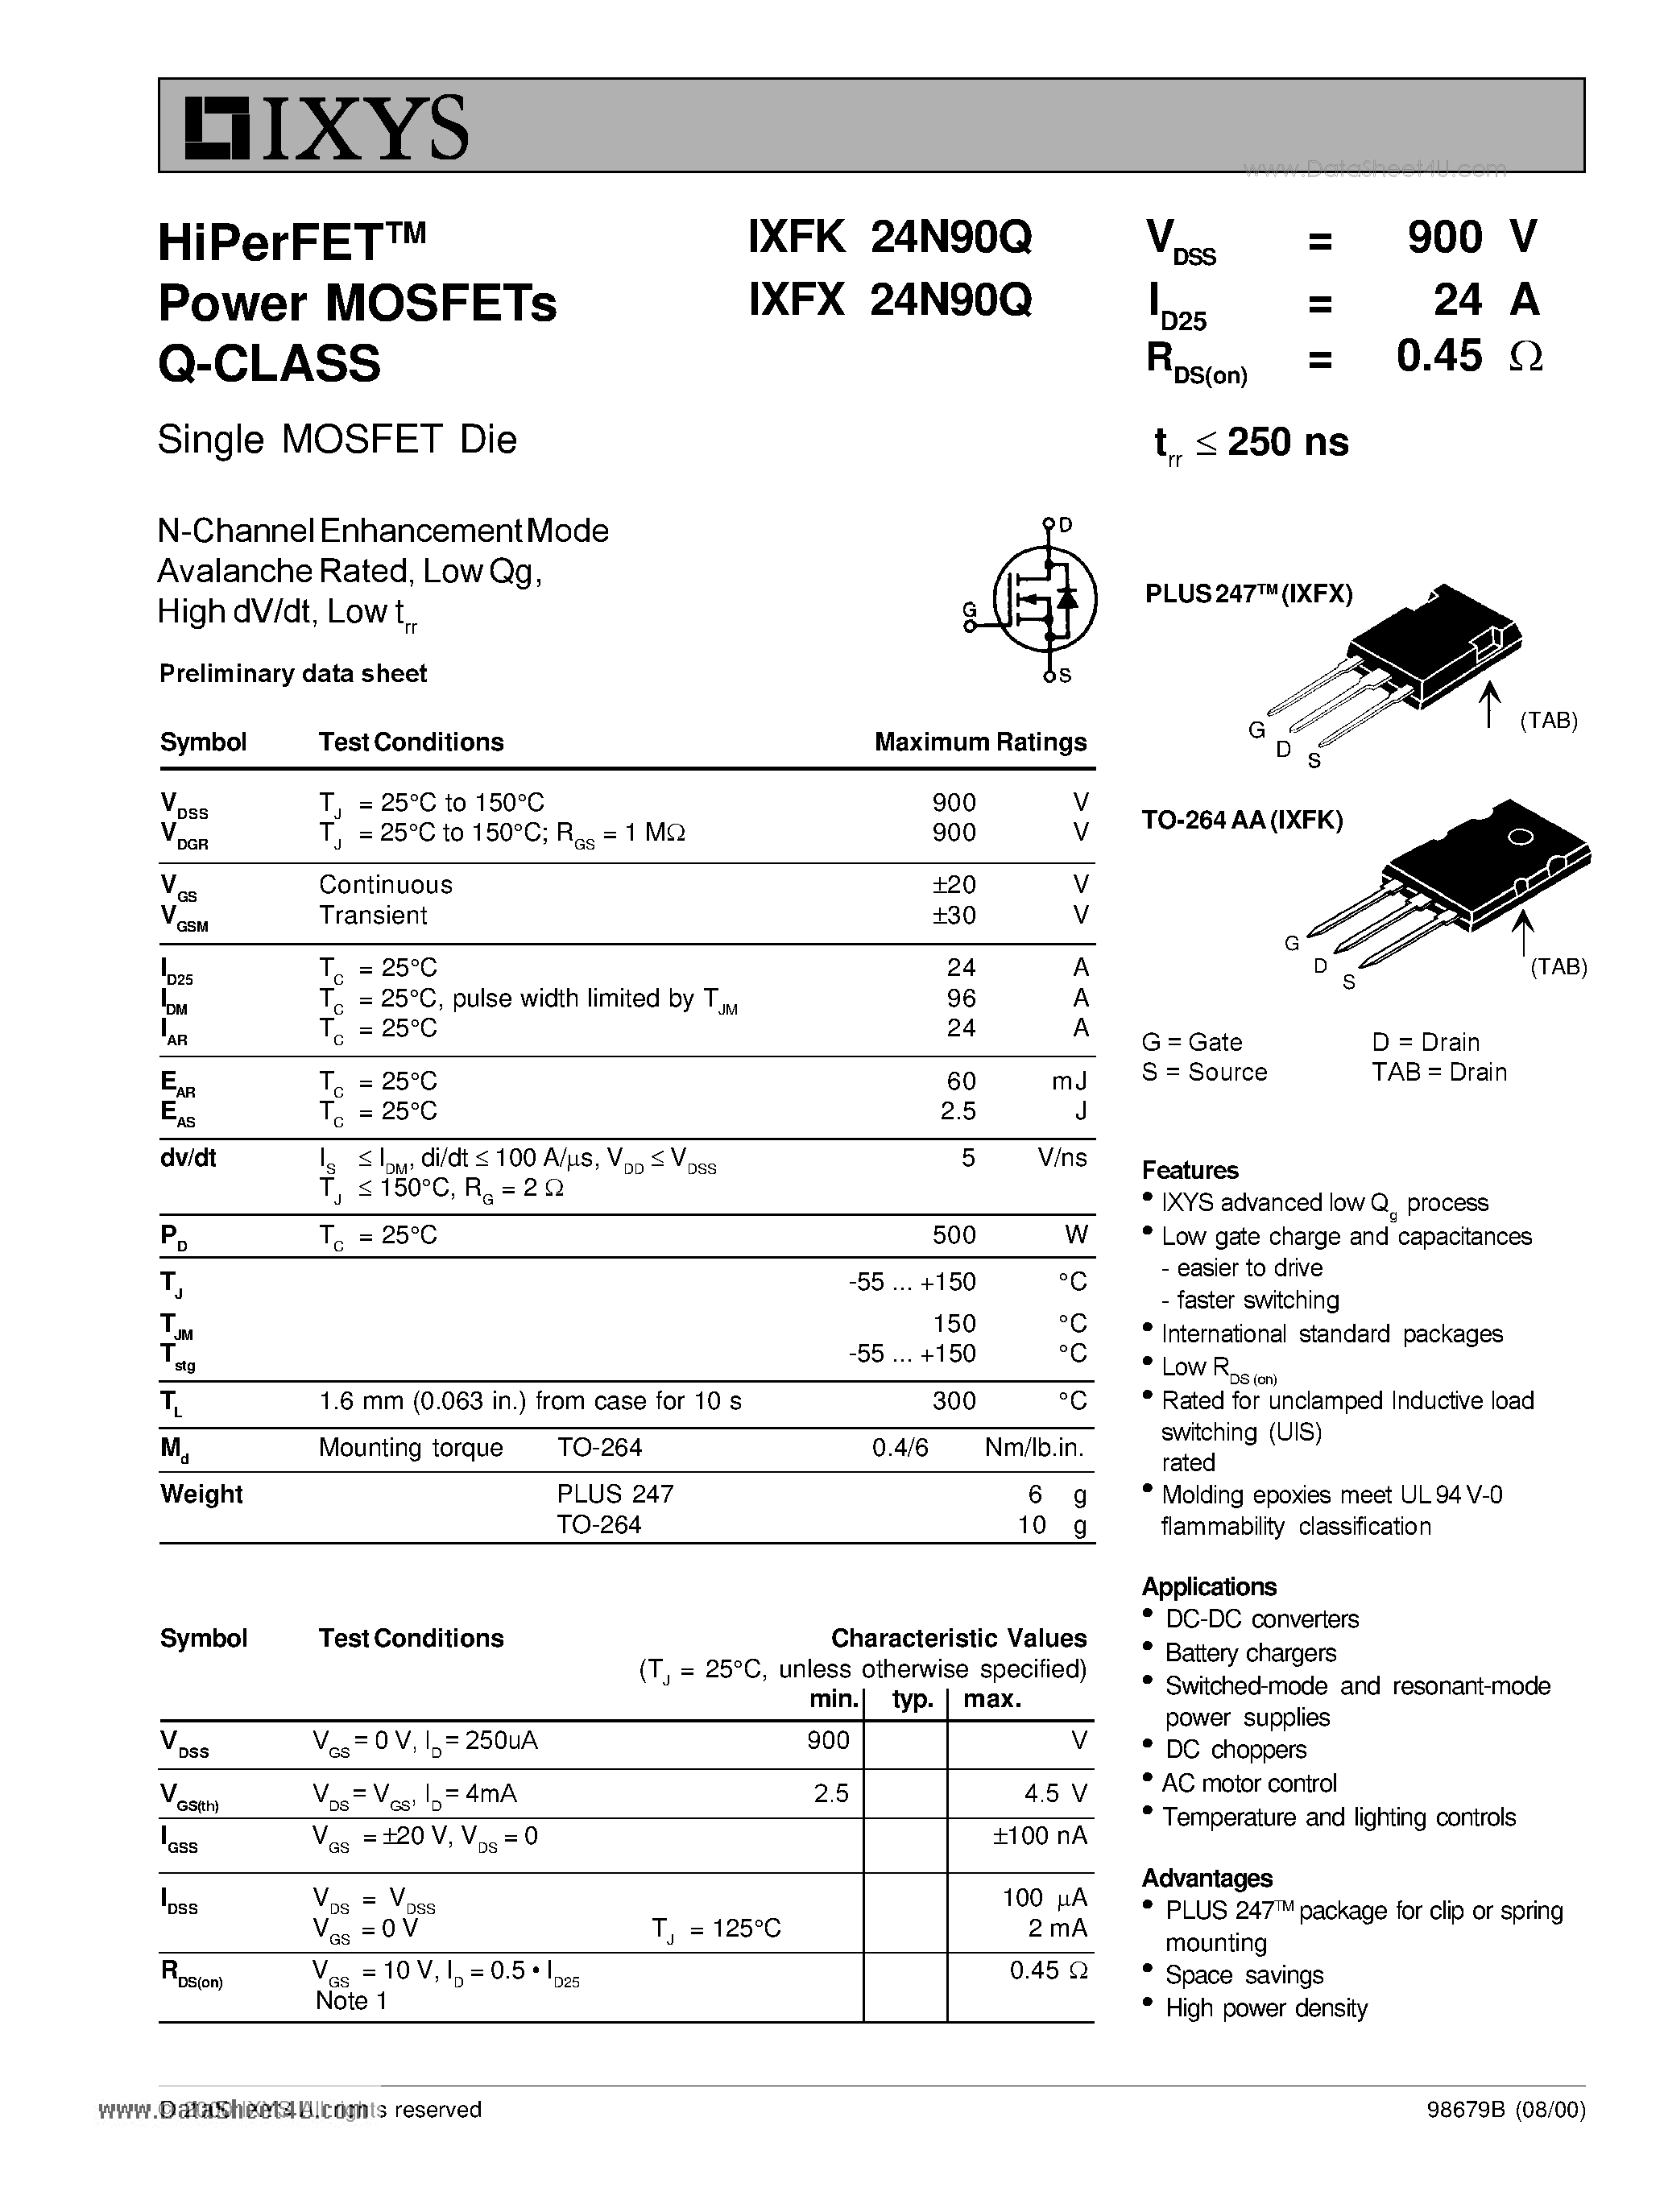 Даташит IXFK24N90Q - HiPerFET Power MOSFETs Q-Class страница 1